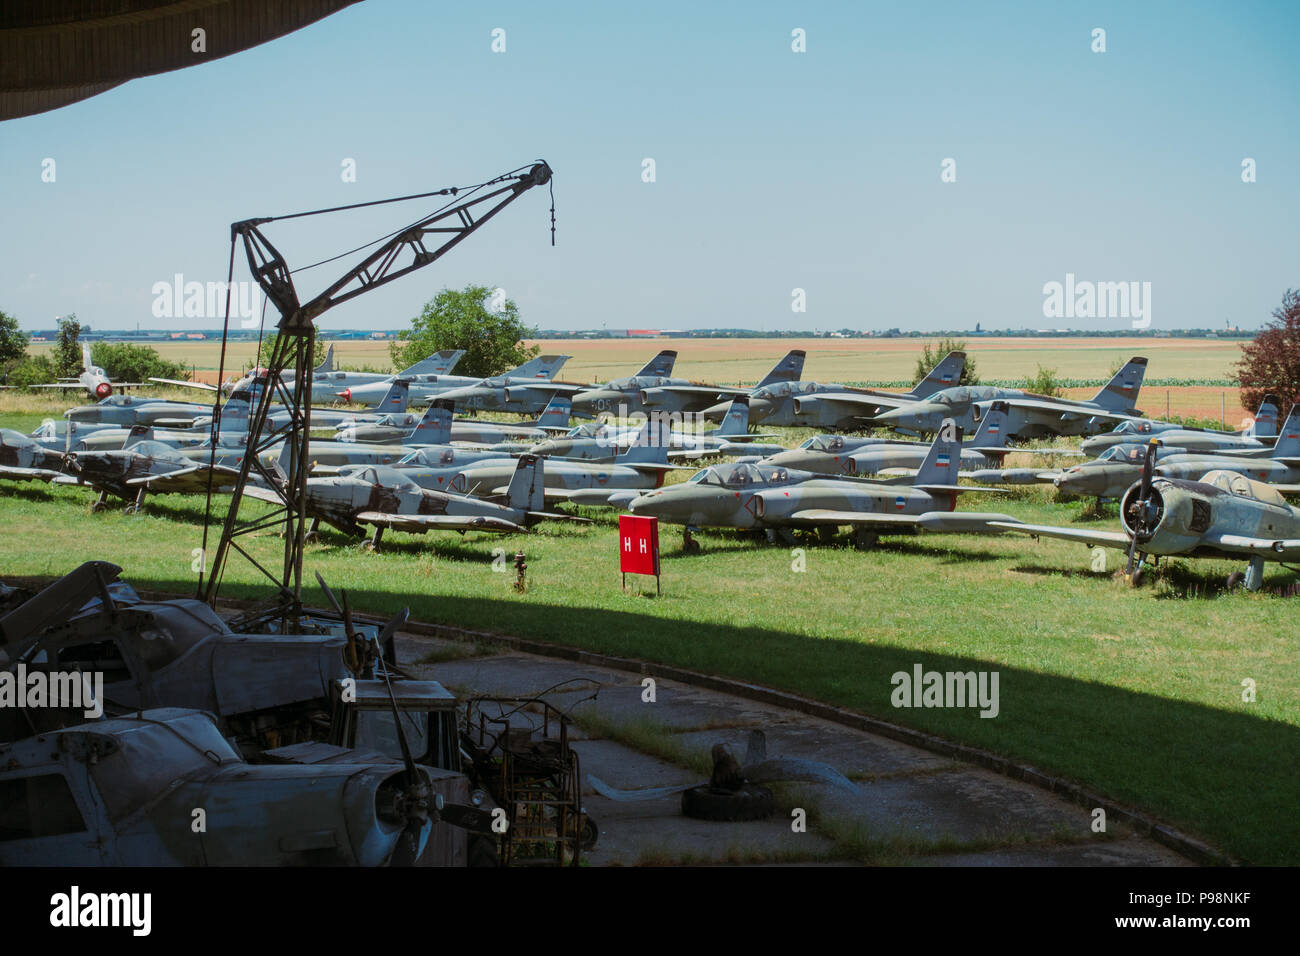 neglige de l ere yougoslave aeronefs en exposition dans le soleil de l ete a l exterieur du musee aeronautique belgrade serbie image